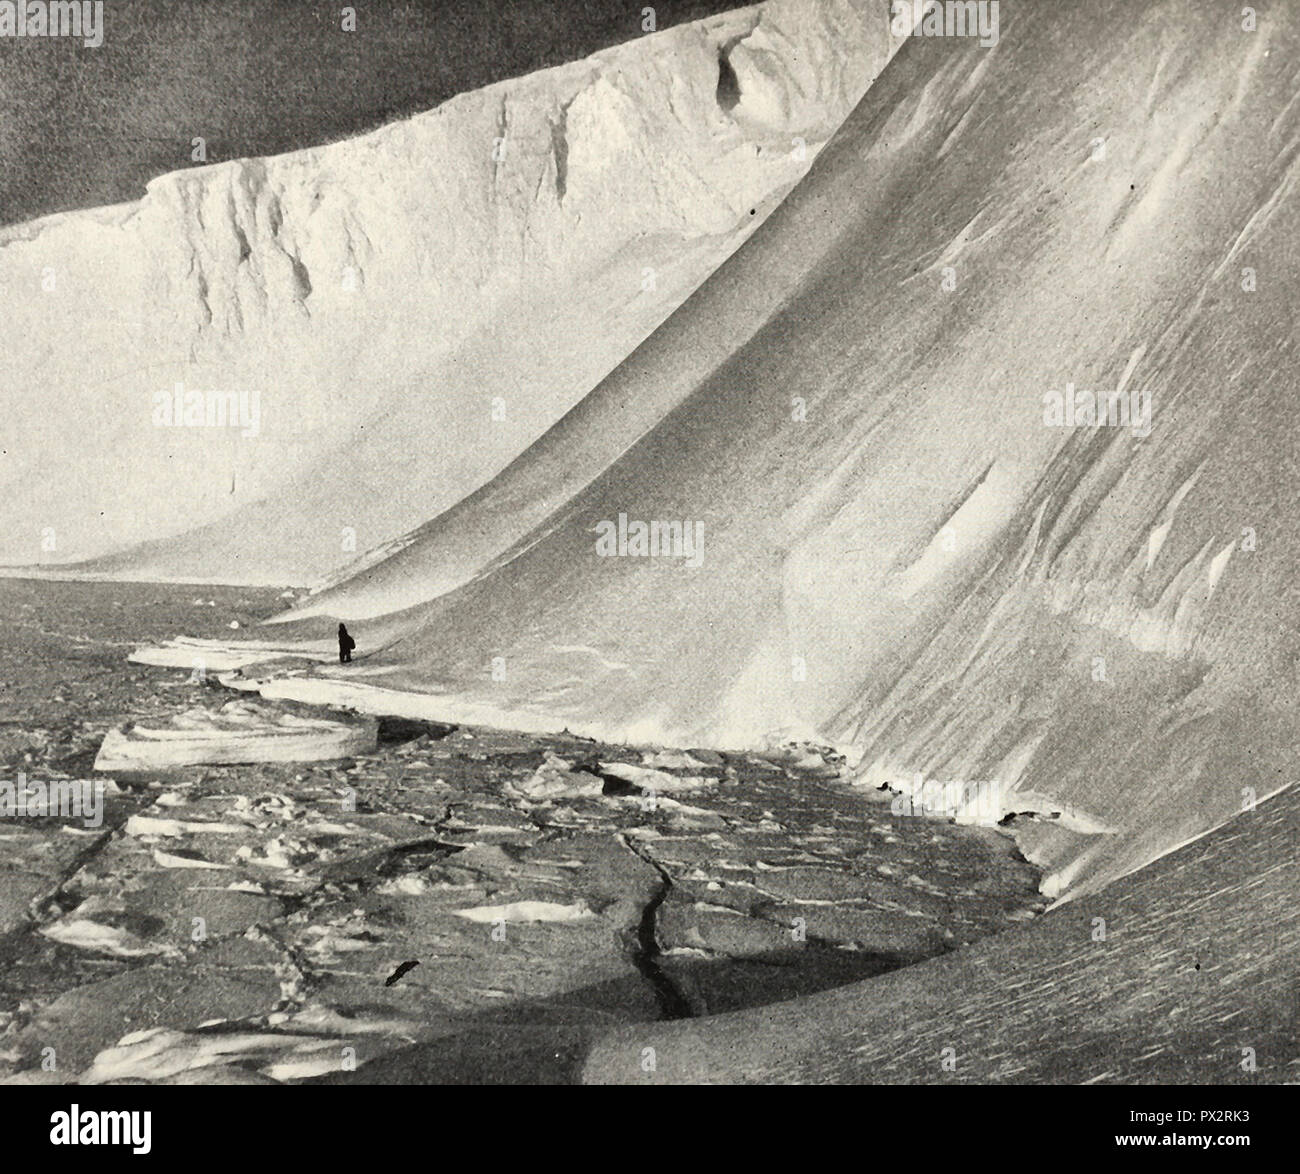 Menschen mit Furcht erfüllt, wie er steht unter gewaltigen Eiswände, der Turm 180 Meter über ihm, Antarktis, um 1910 Stockfoto